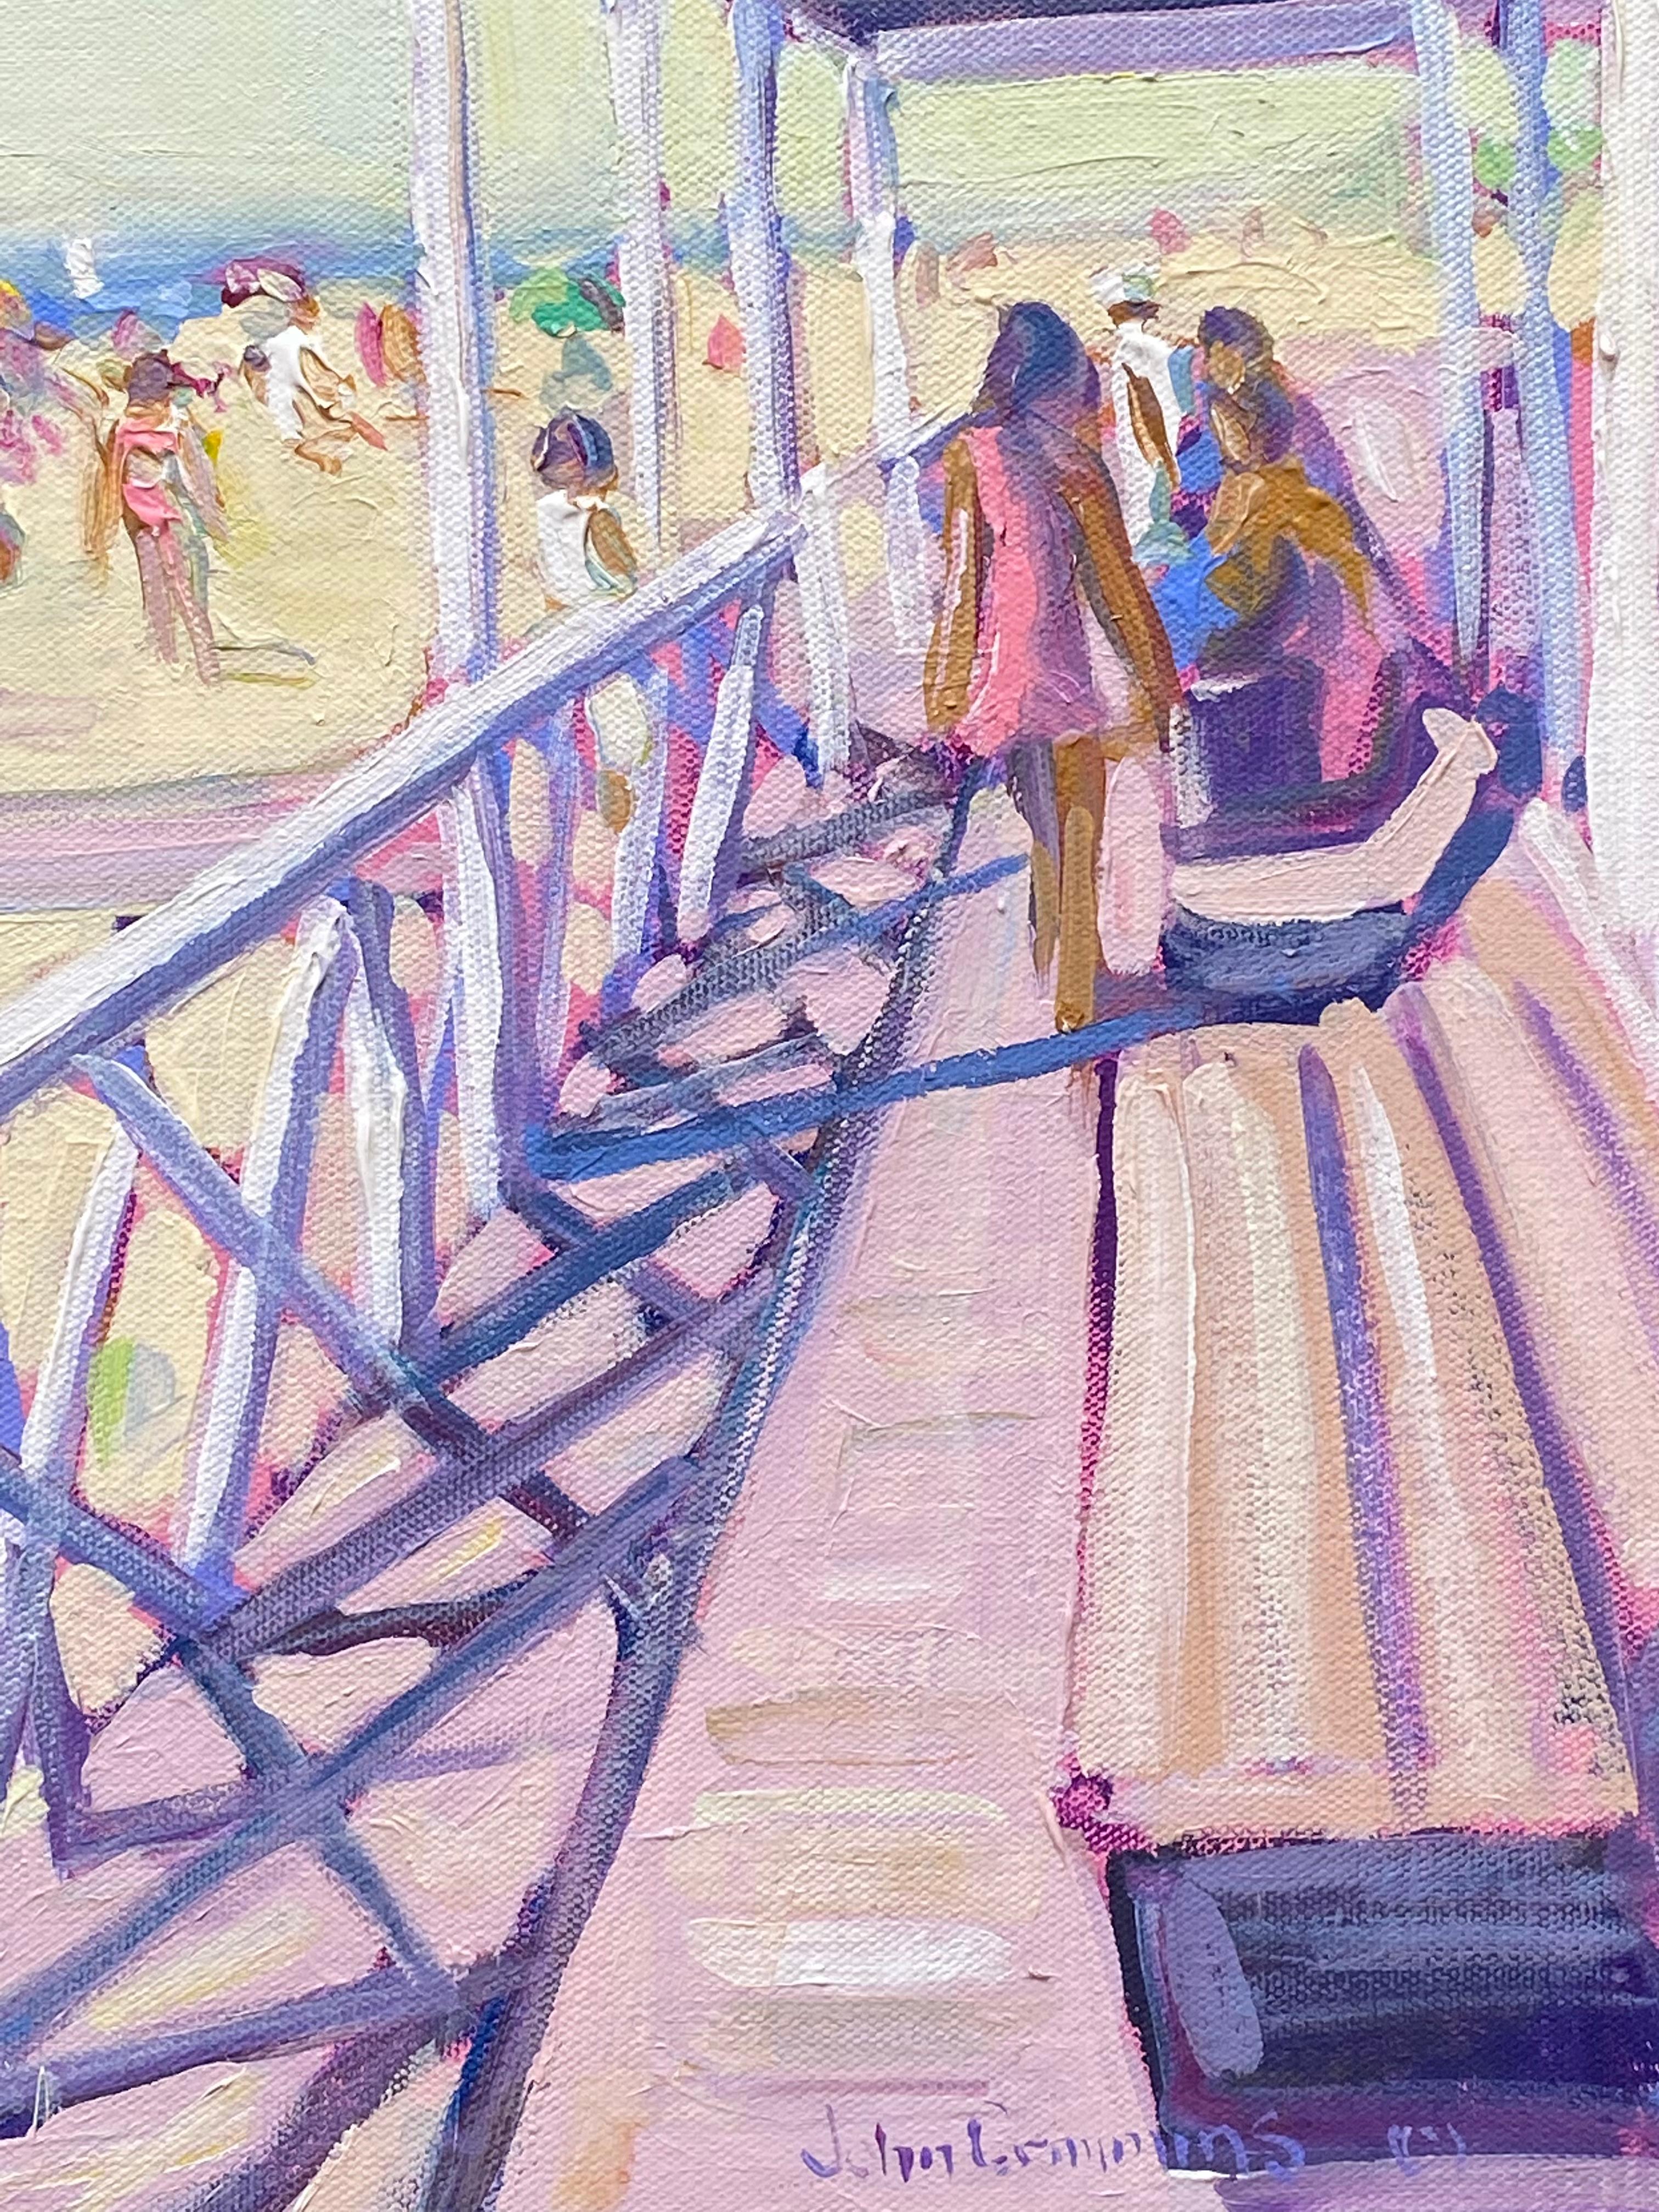 Pavilion Cooper's Beach Southampton - Post-impressionnisme Painting par John Crimmins